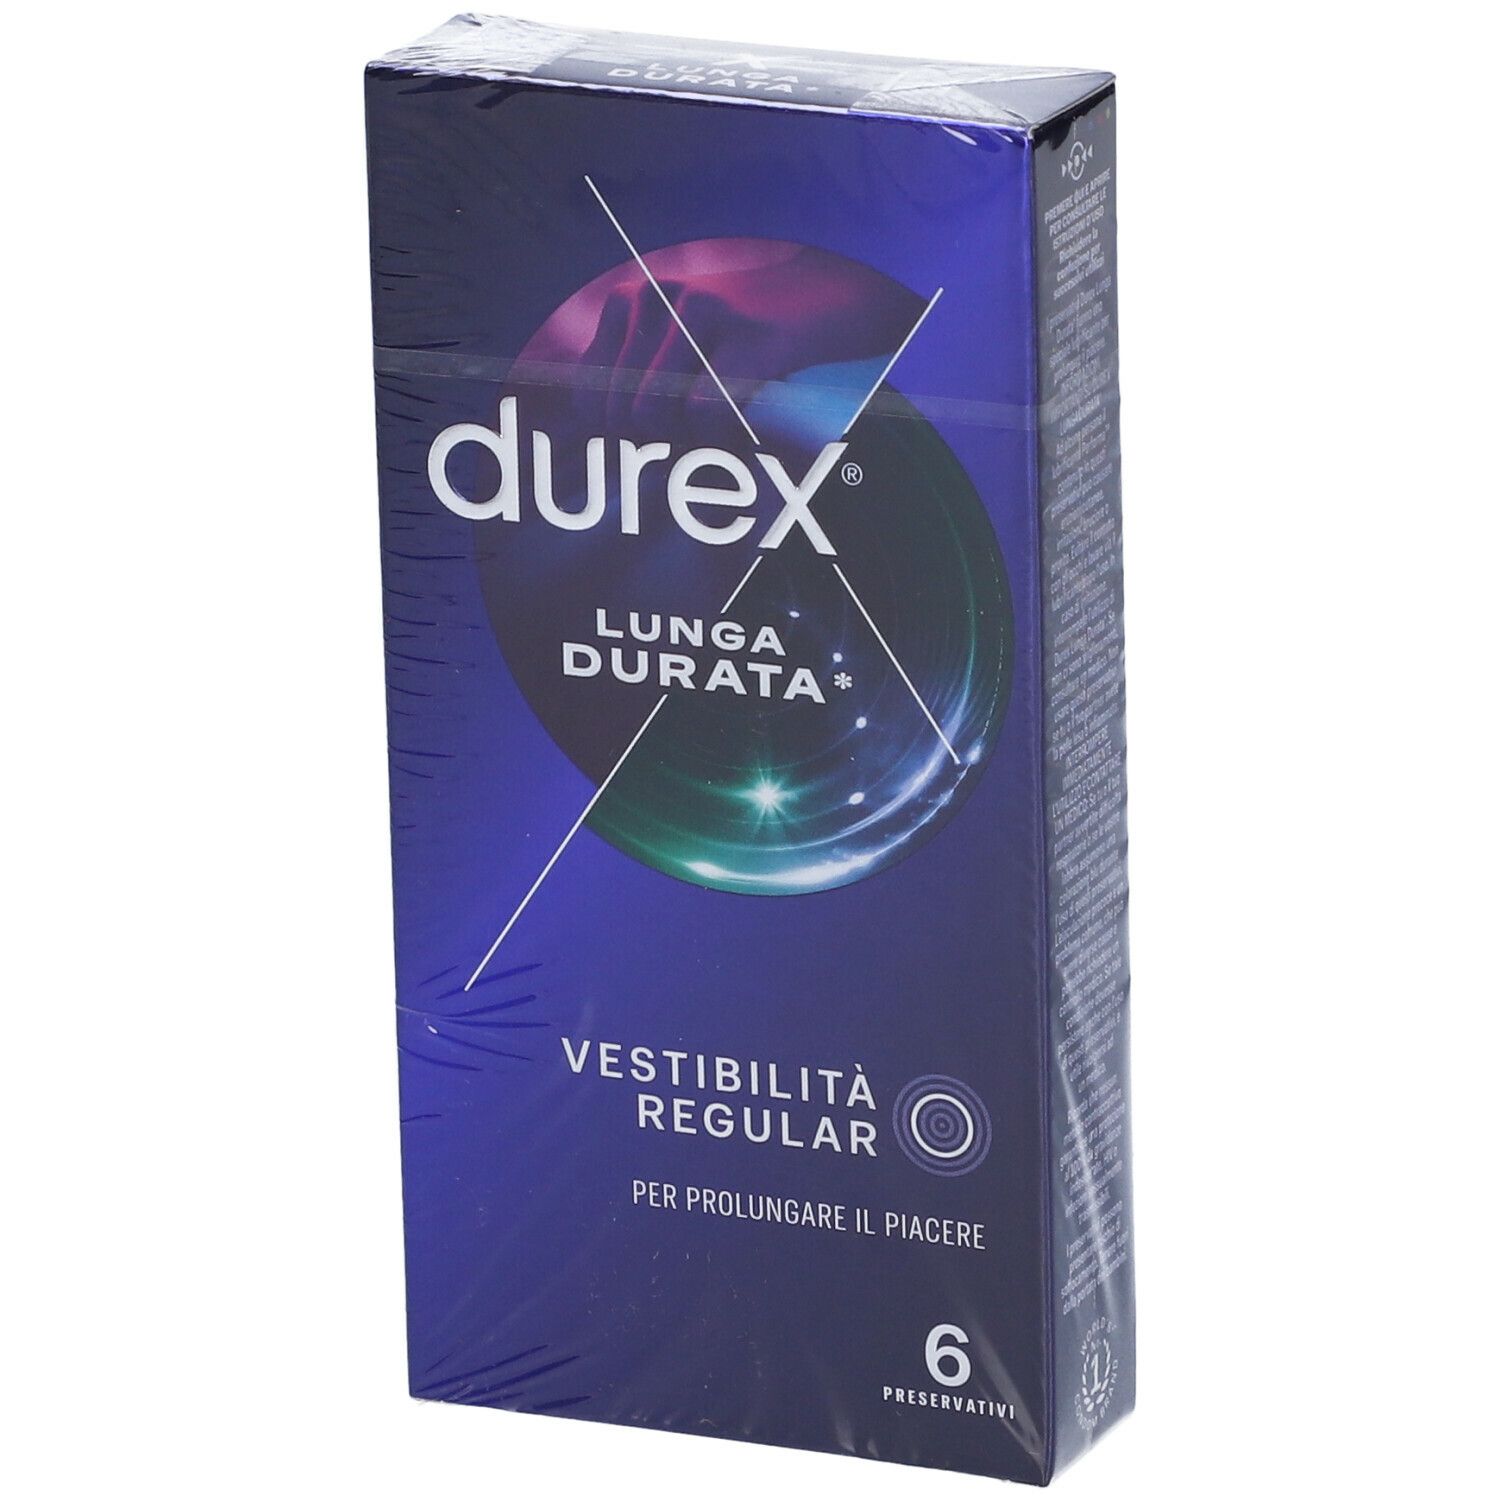 Durex® Performa 6 pezzi​